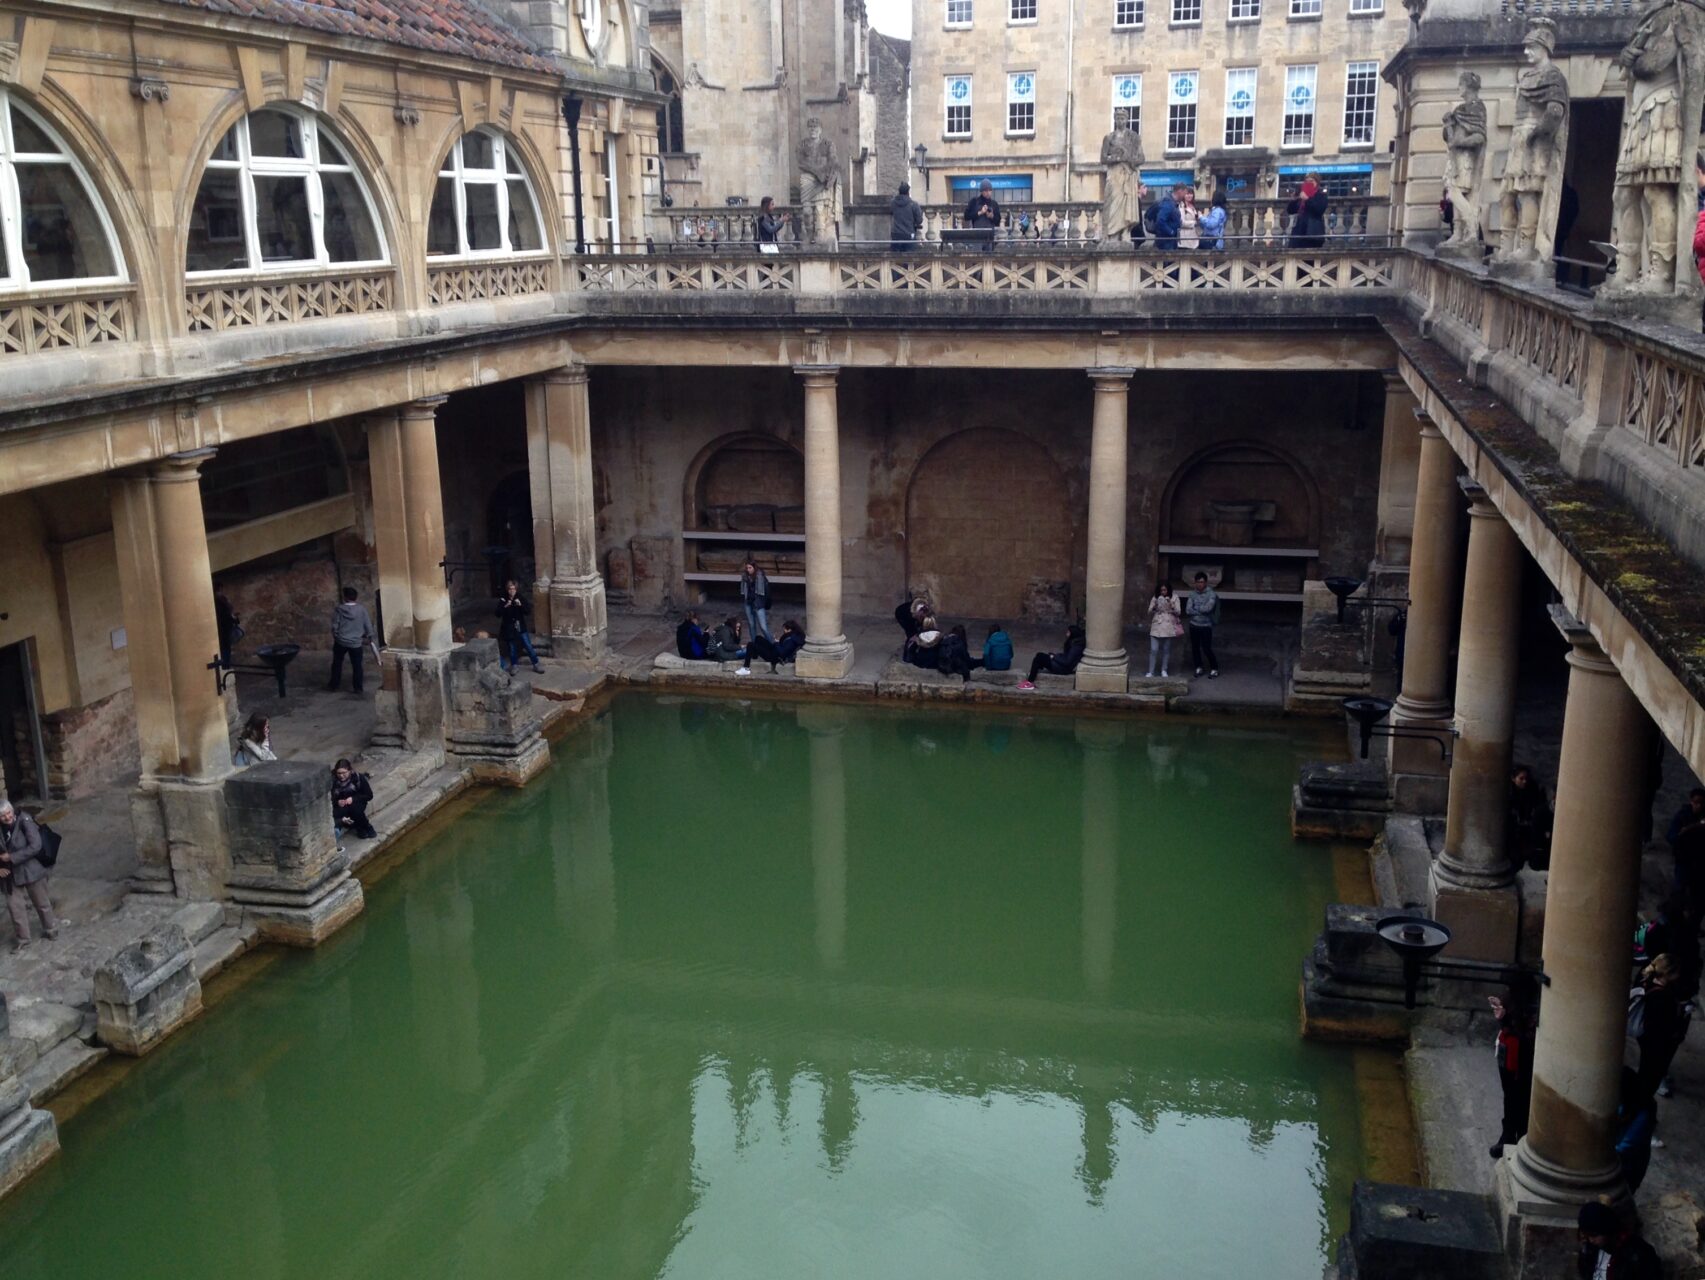 Bath’s Roman Baths